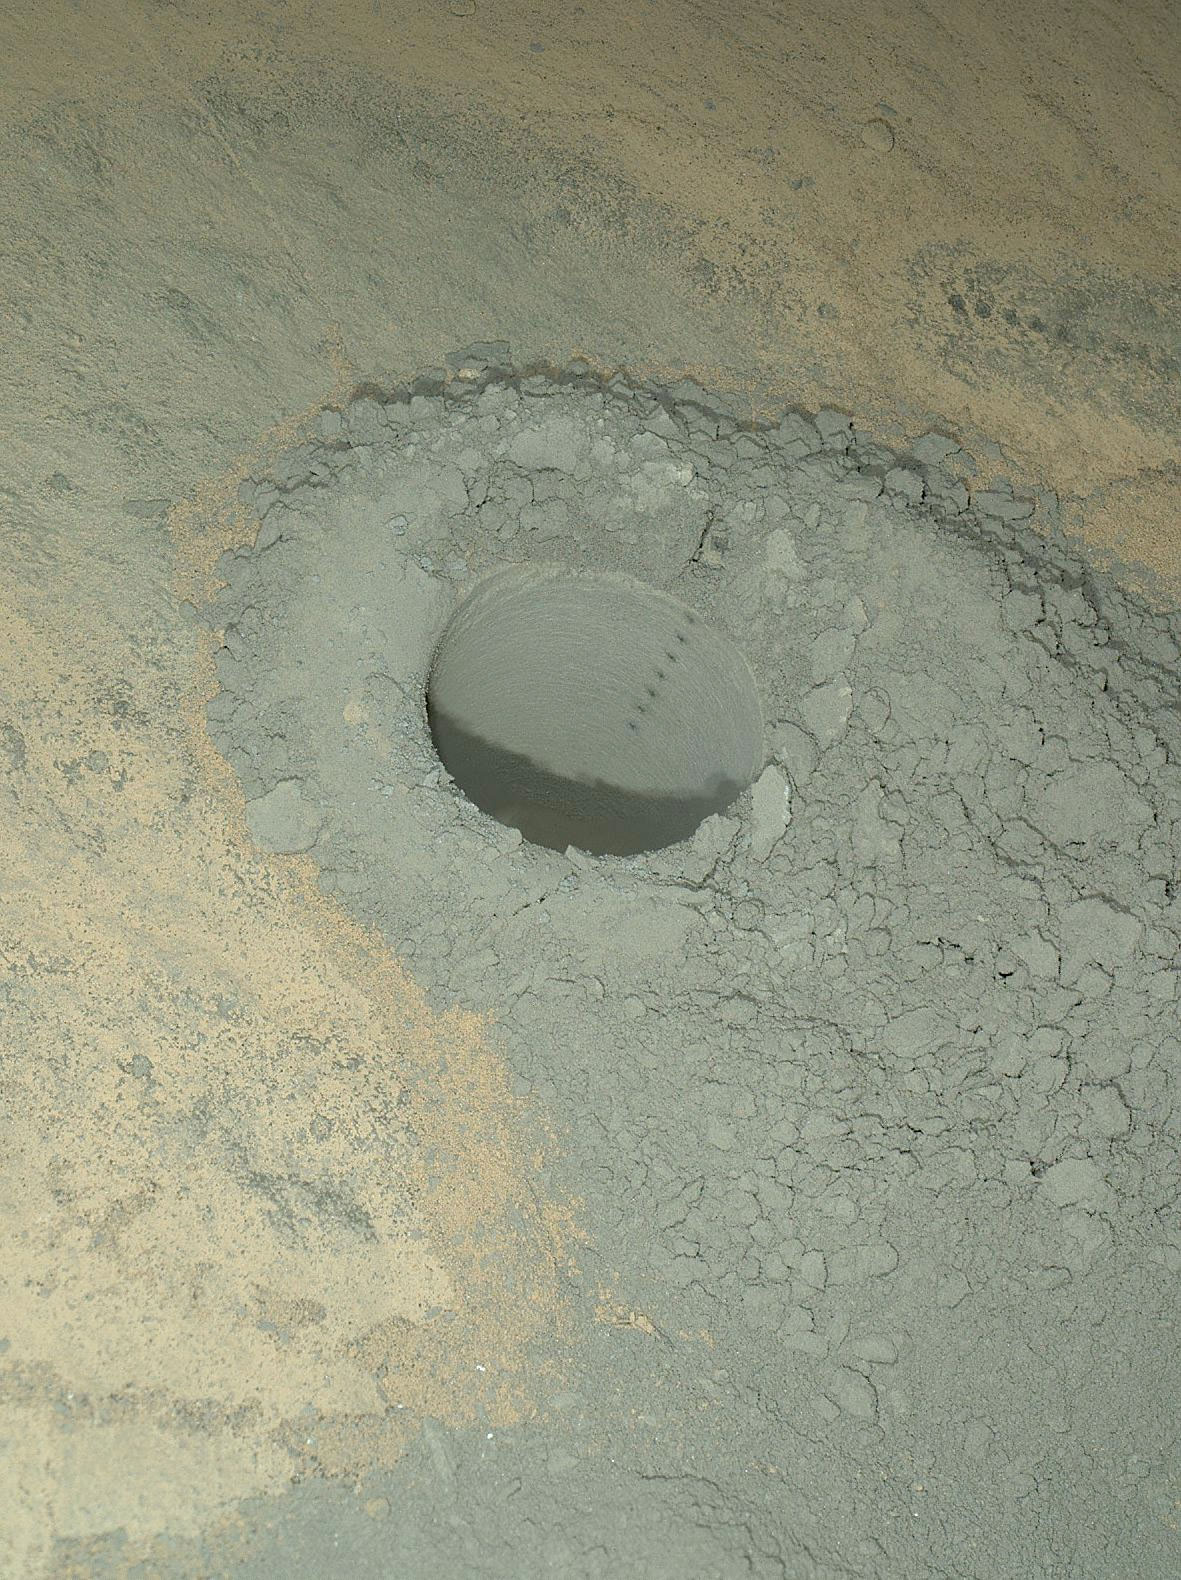 Image acquise par le microscope Mahli du forage le plus récent et les marques laissées par le laser de&nbsp;ChemCam le long de la paroi. Cette combinaison permet de mesurer la composition à l'intérieur de la roche, un peu comme lorsqu'un géologue sur le terrain casse un caillou pour l'observer. © Nasa/JPL-Caltech/MSSS